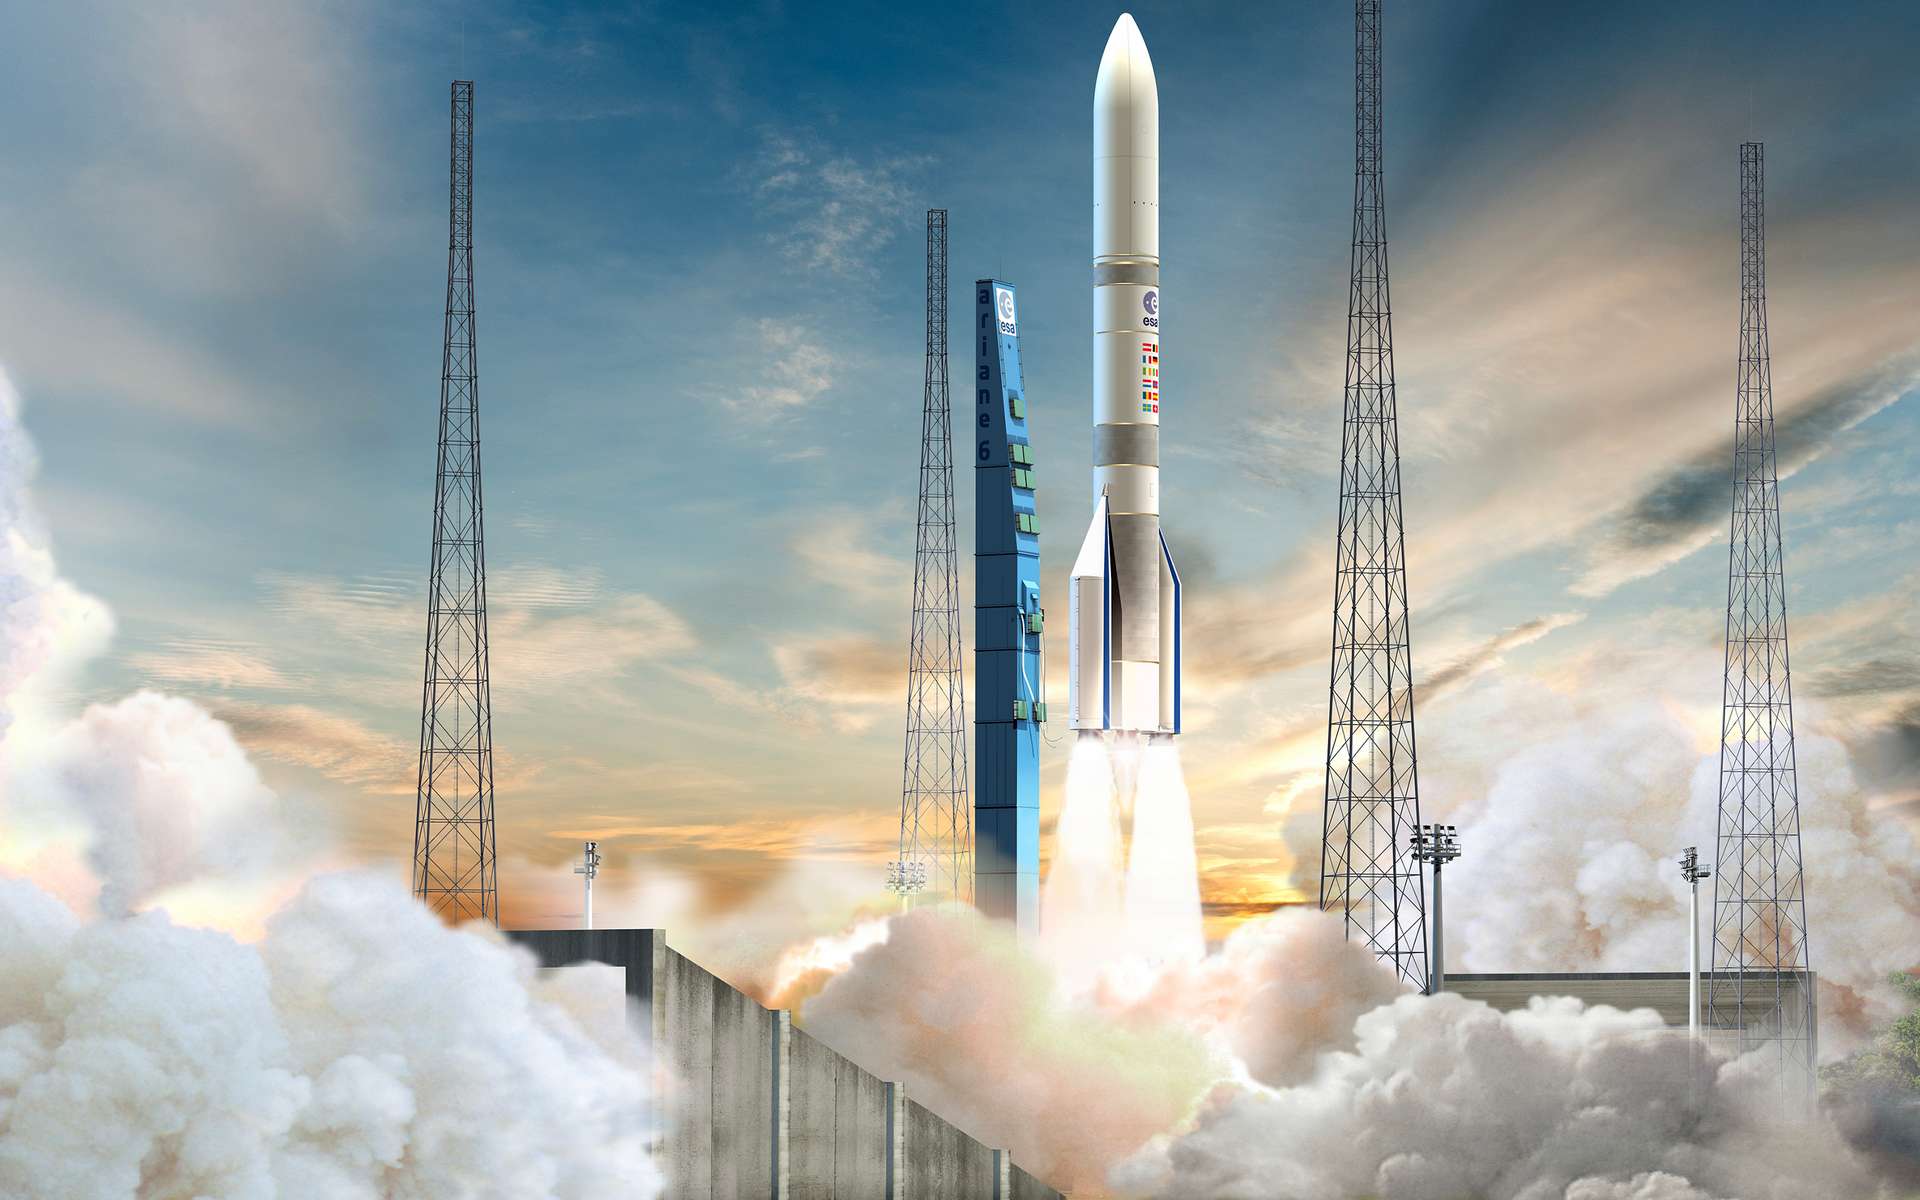 Ariane 5 marque la fin d'une époque : l'Europe face à de nouveaux défis et incertitudes avec Ariane 6